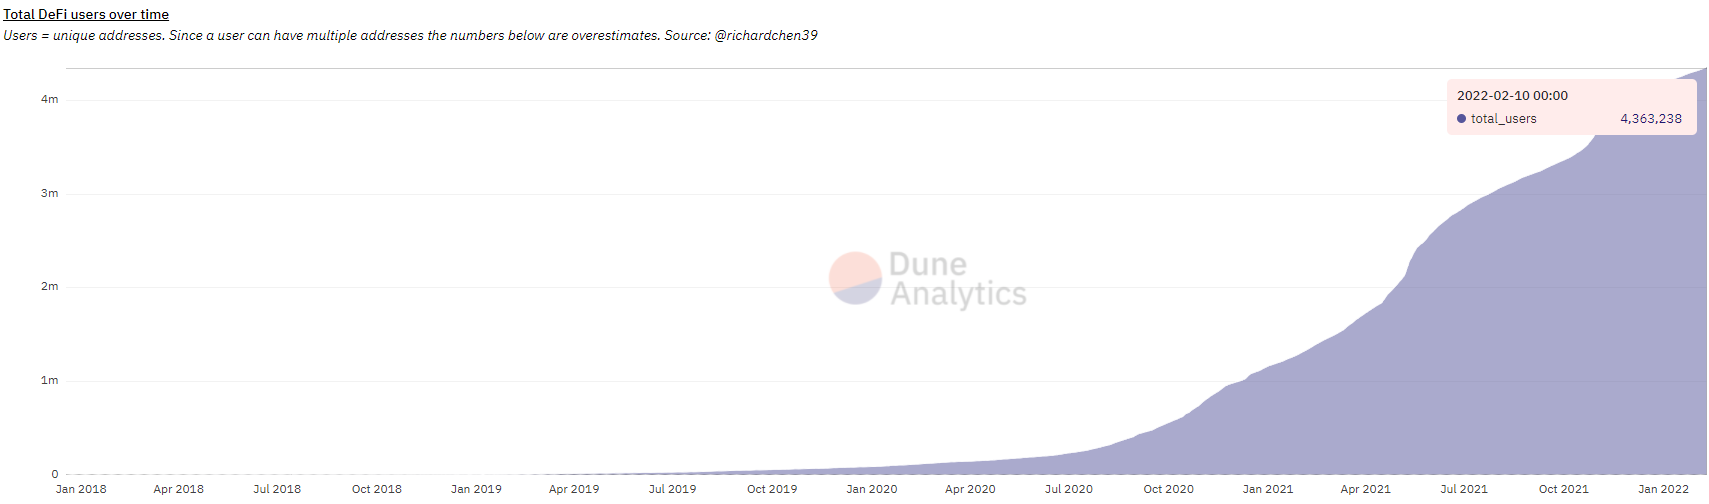 Tổng số người dùng DeFi theo thời gian. Nguồn: Dune Analytics